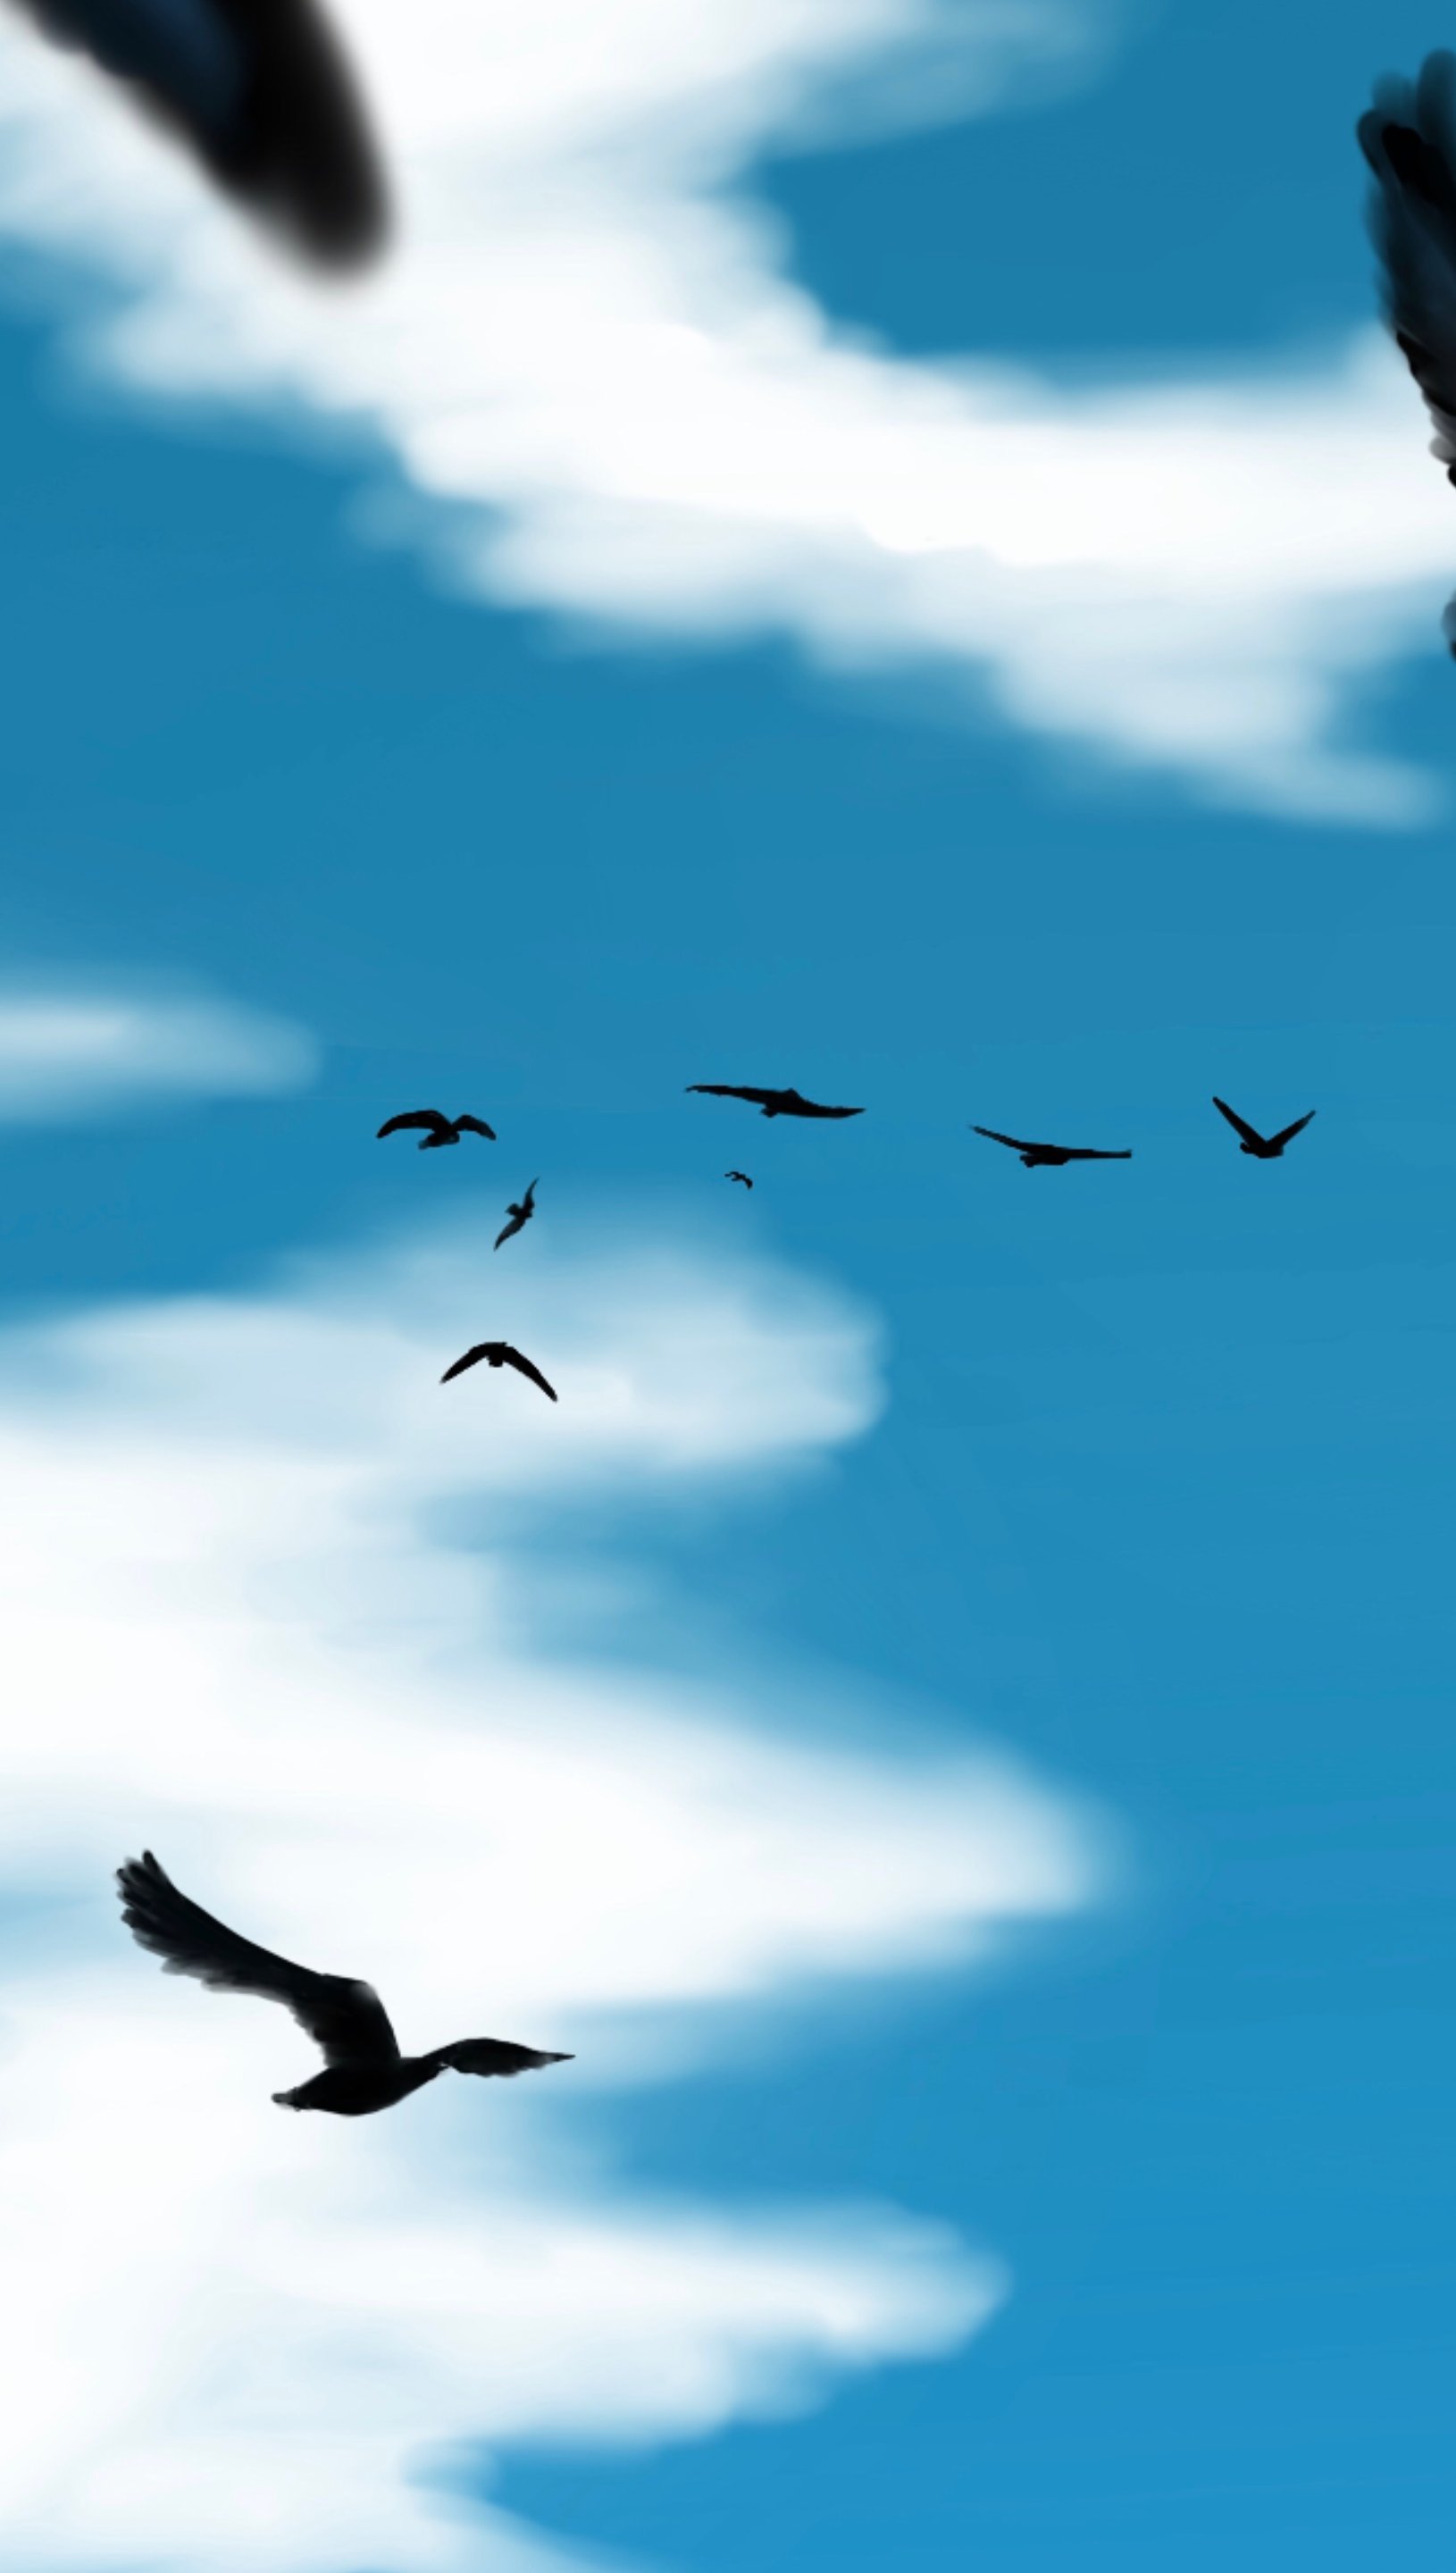 Birds flying in the sky Wallpaper 5k Ultra HD